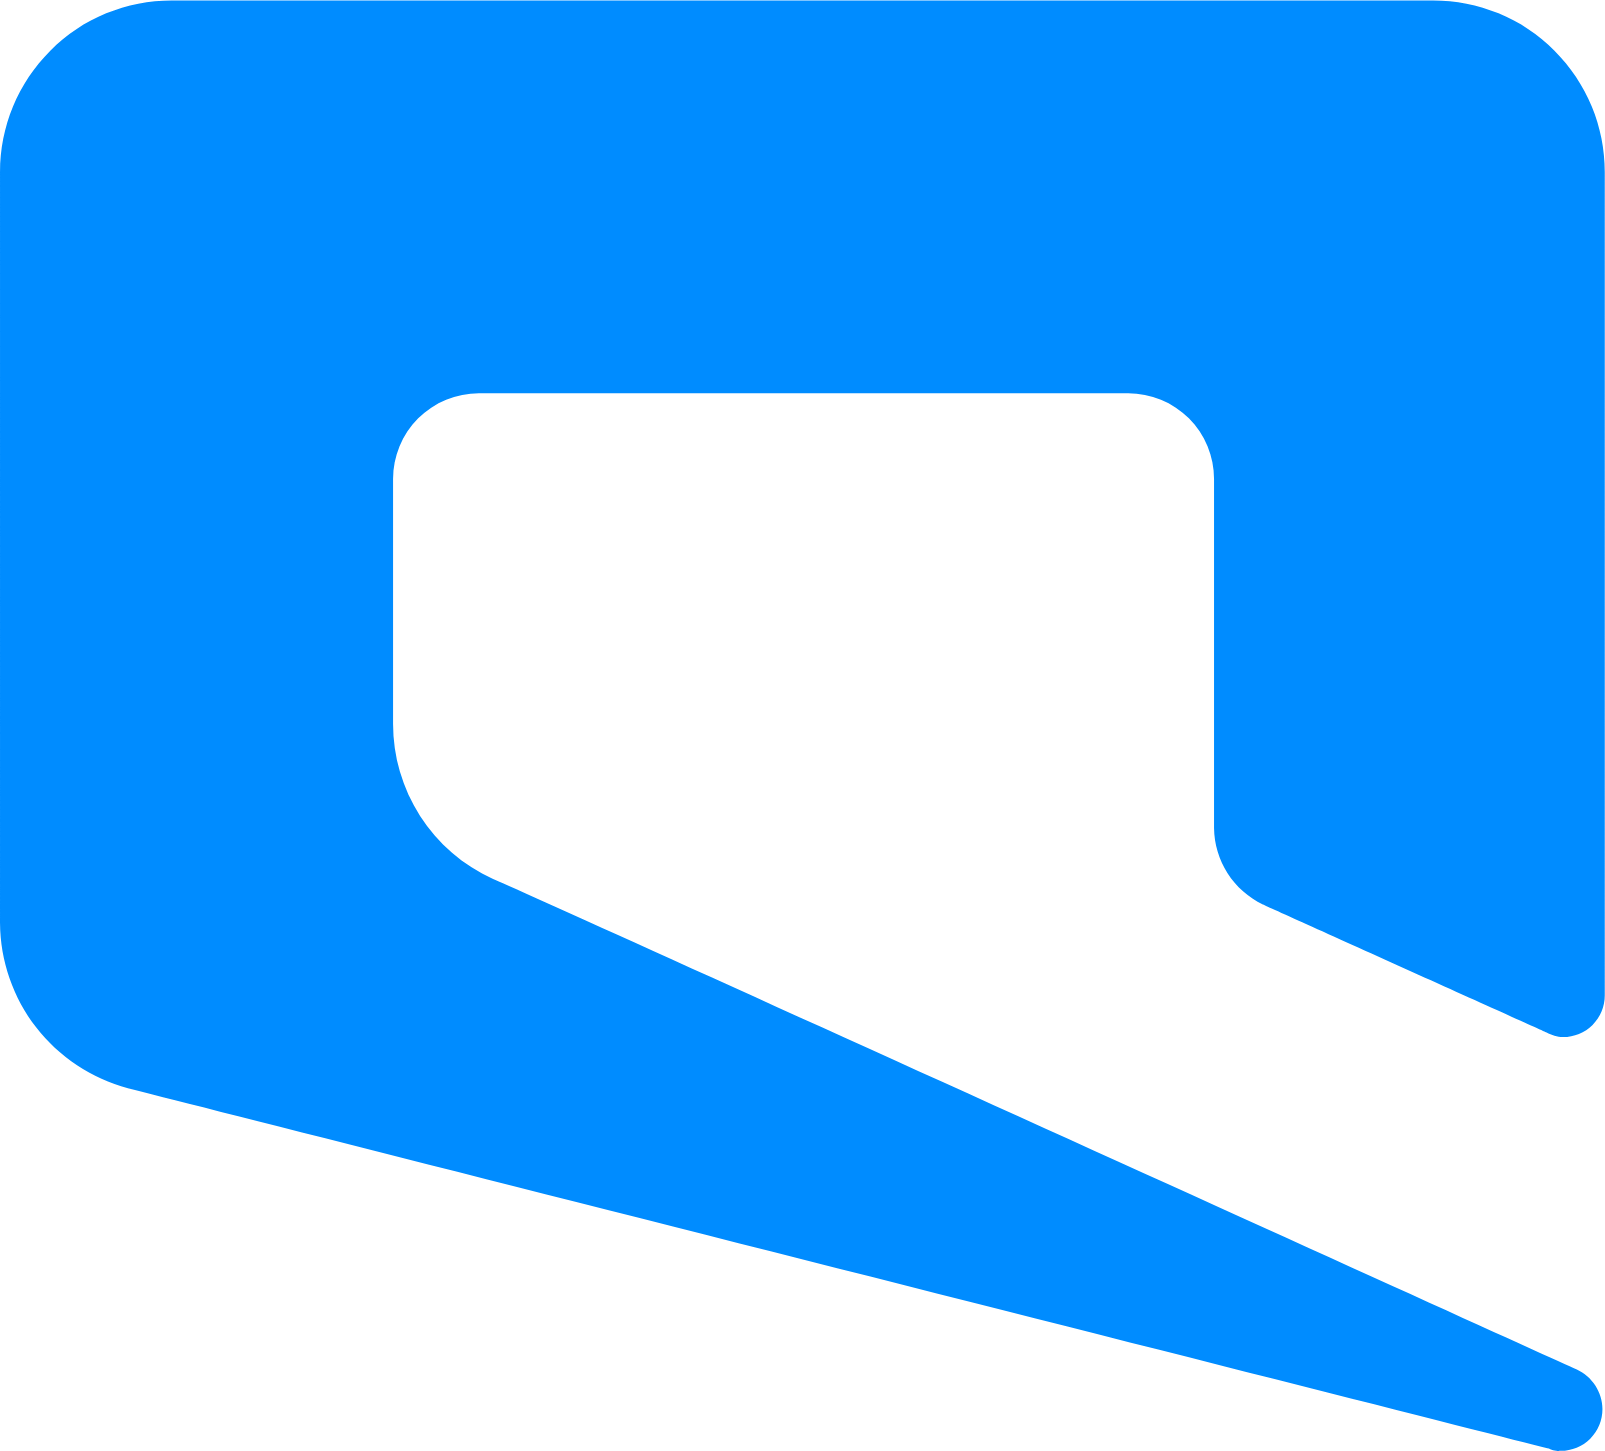 Etihad Etisalat (Mobily) logo (transparent PNG)